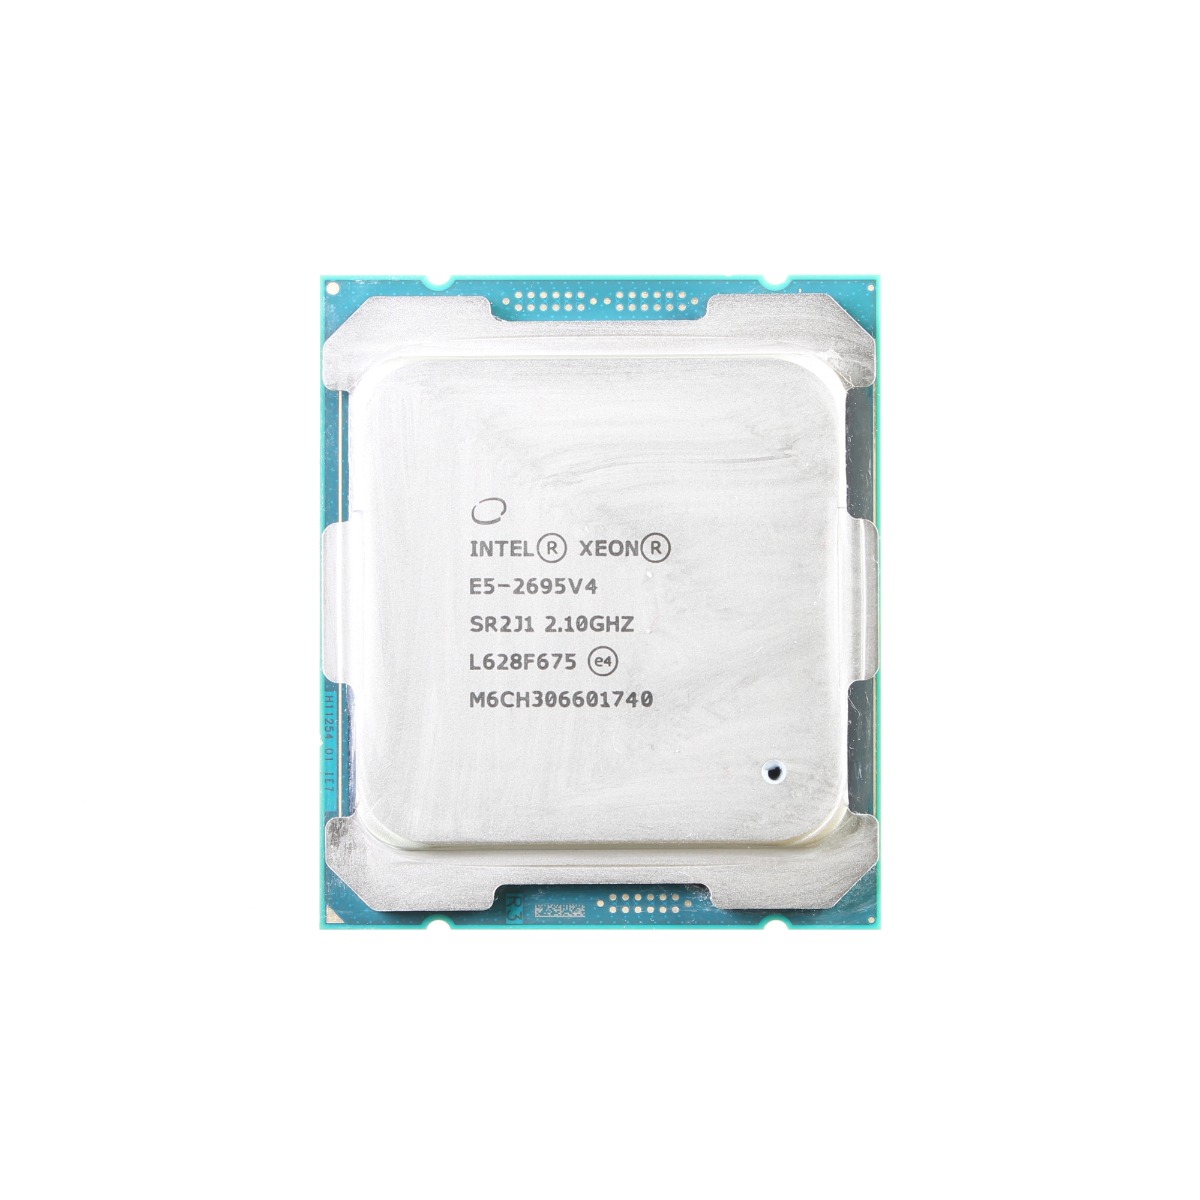 Intel Xeon E5-2695 V4 CPU Processor 18 Core 2.10GHz 45MB L3 Cache 120W SR2J1